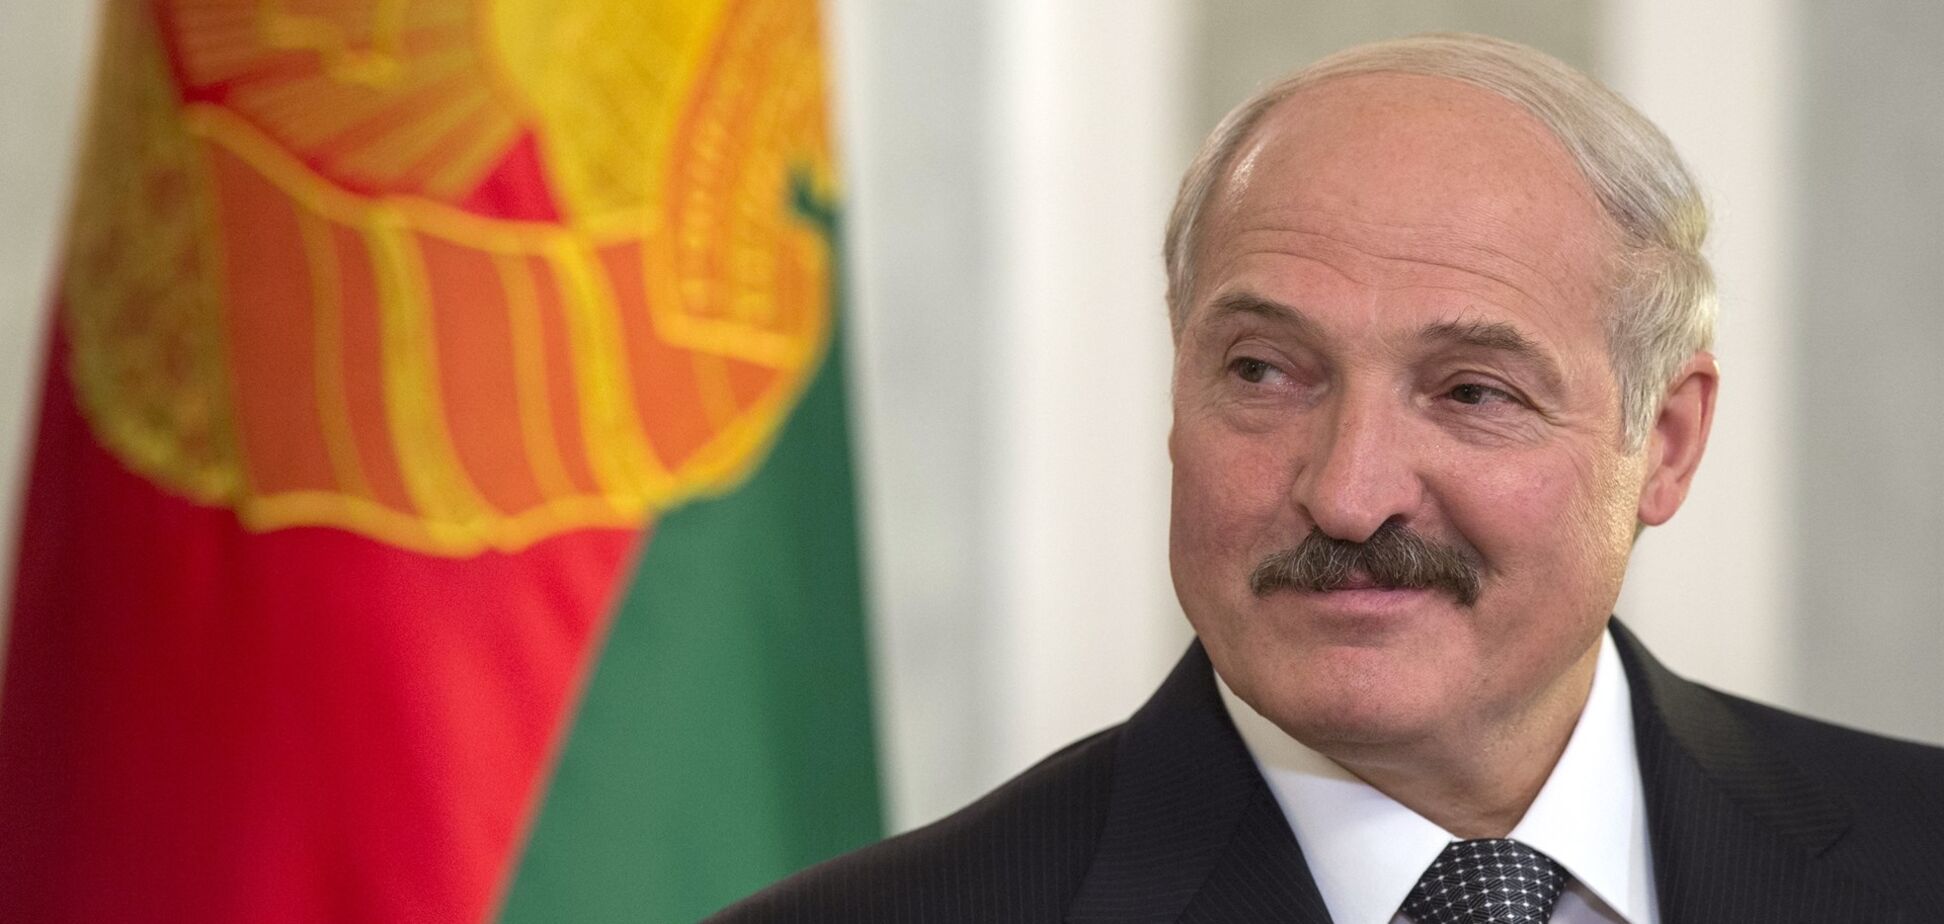 У Лукашенко инсульт? СМИ сообщили о госпитализации президента Беларуси